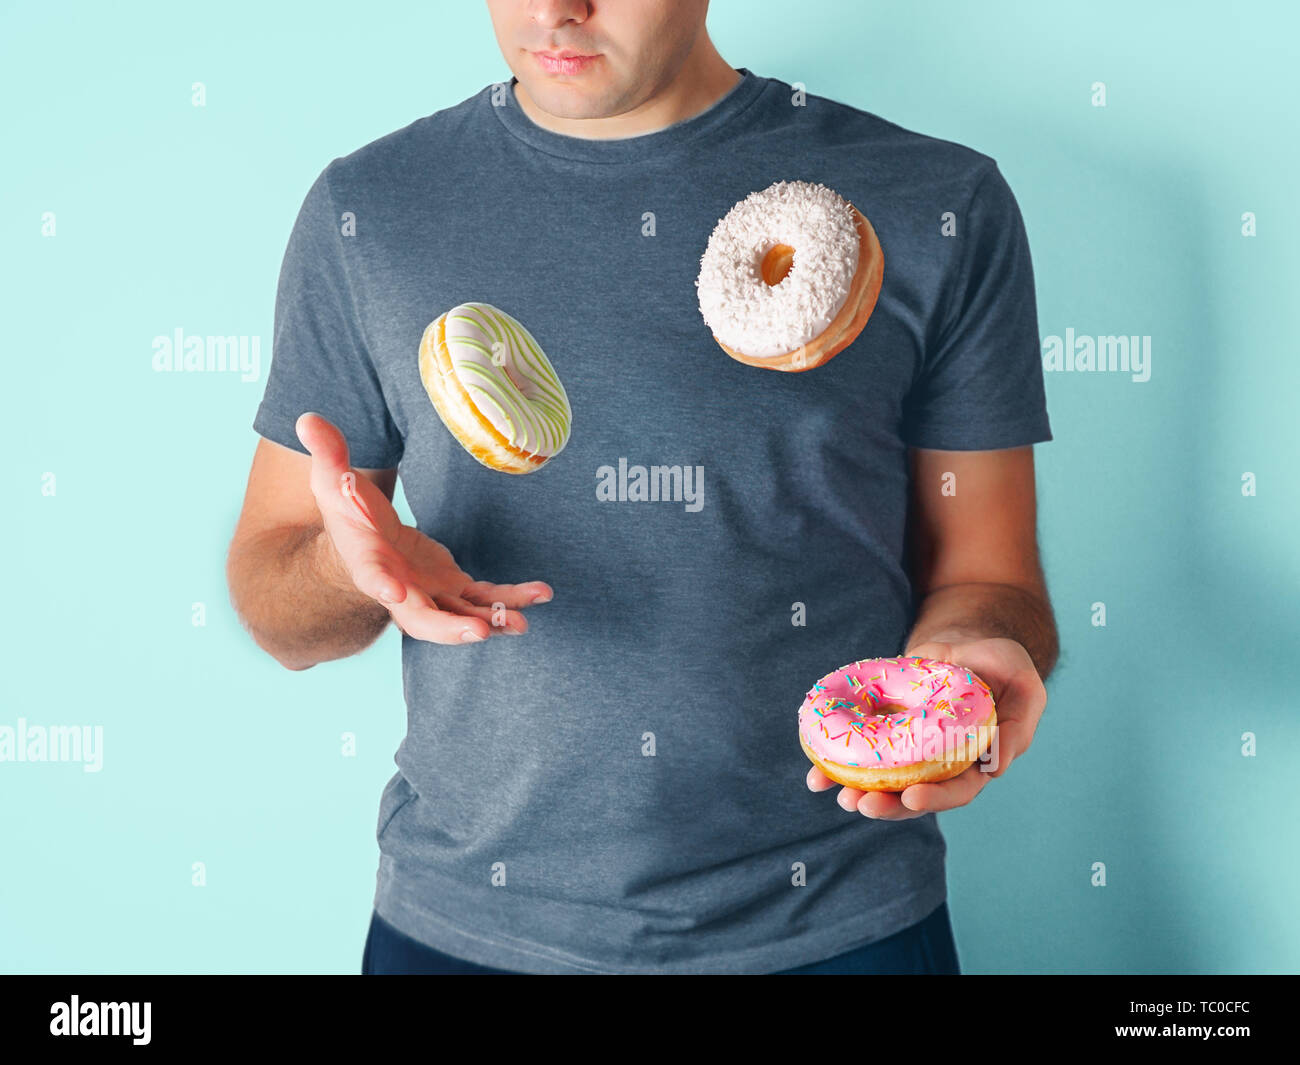 Jongleur Mann jongliert Donuts auf blauem Hintergrund. Donuts Lieferung oder ungesunde Ernährung Konzept. Flying glasierte Krapfen mit Streuseln und Kokosraspeln in männlichen Händen Stockfoto